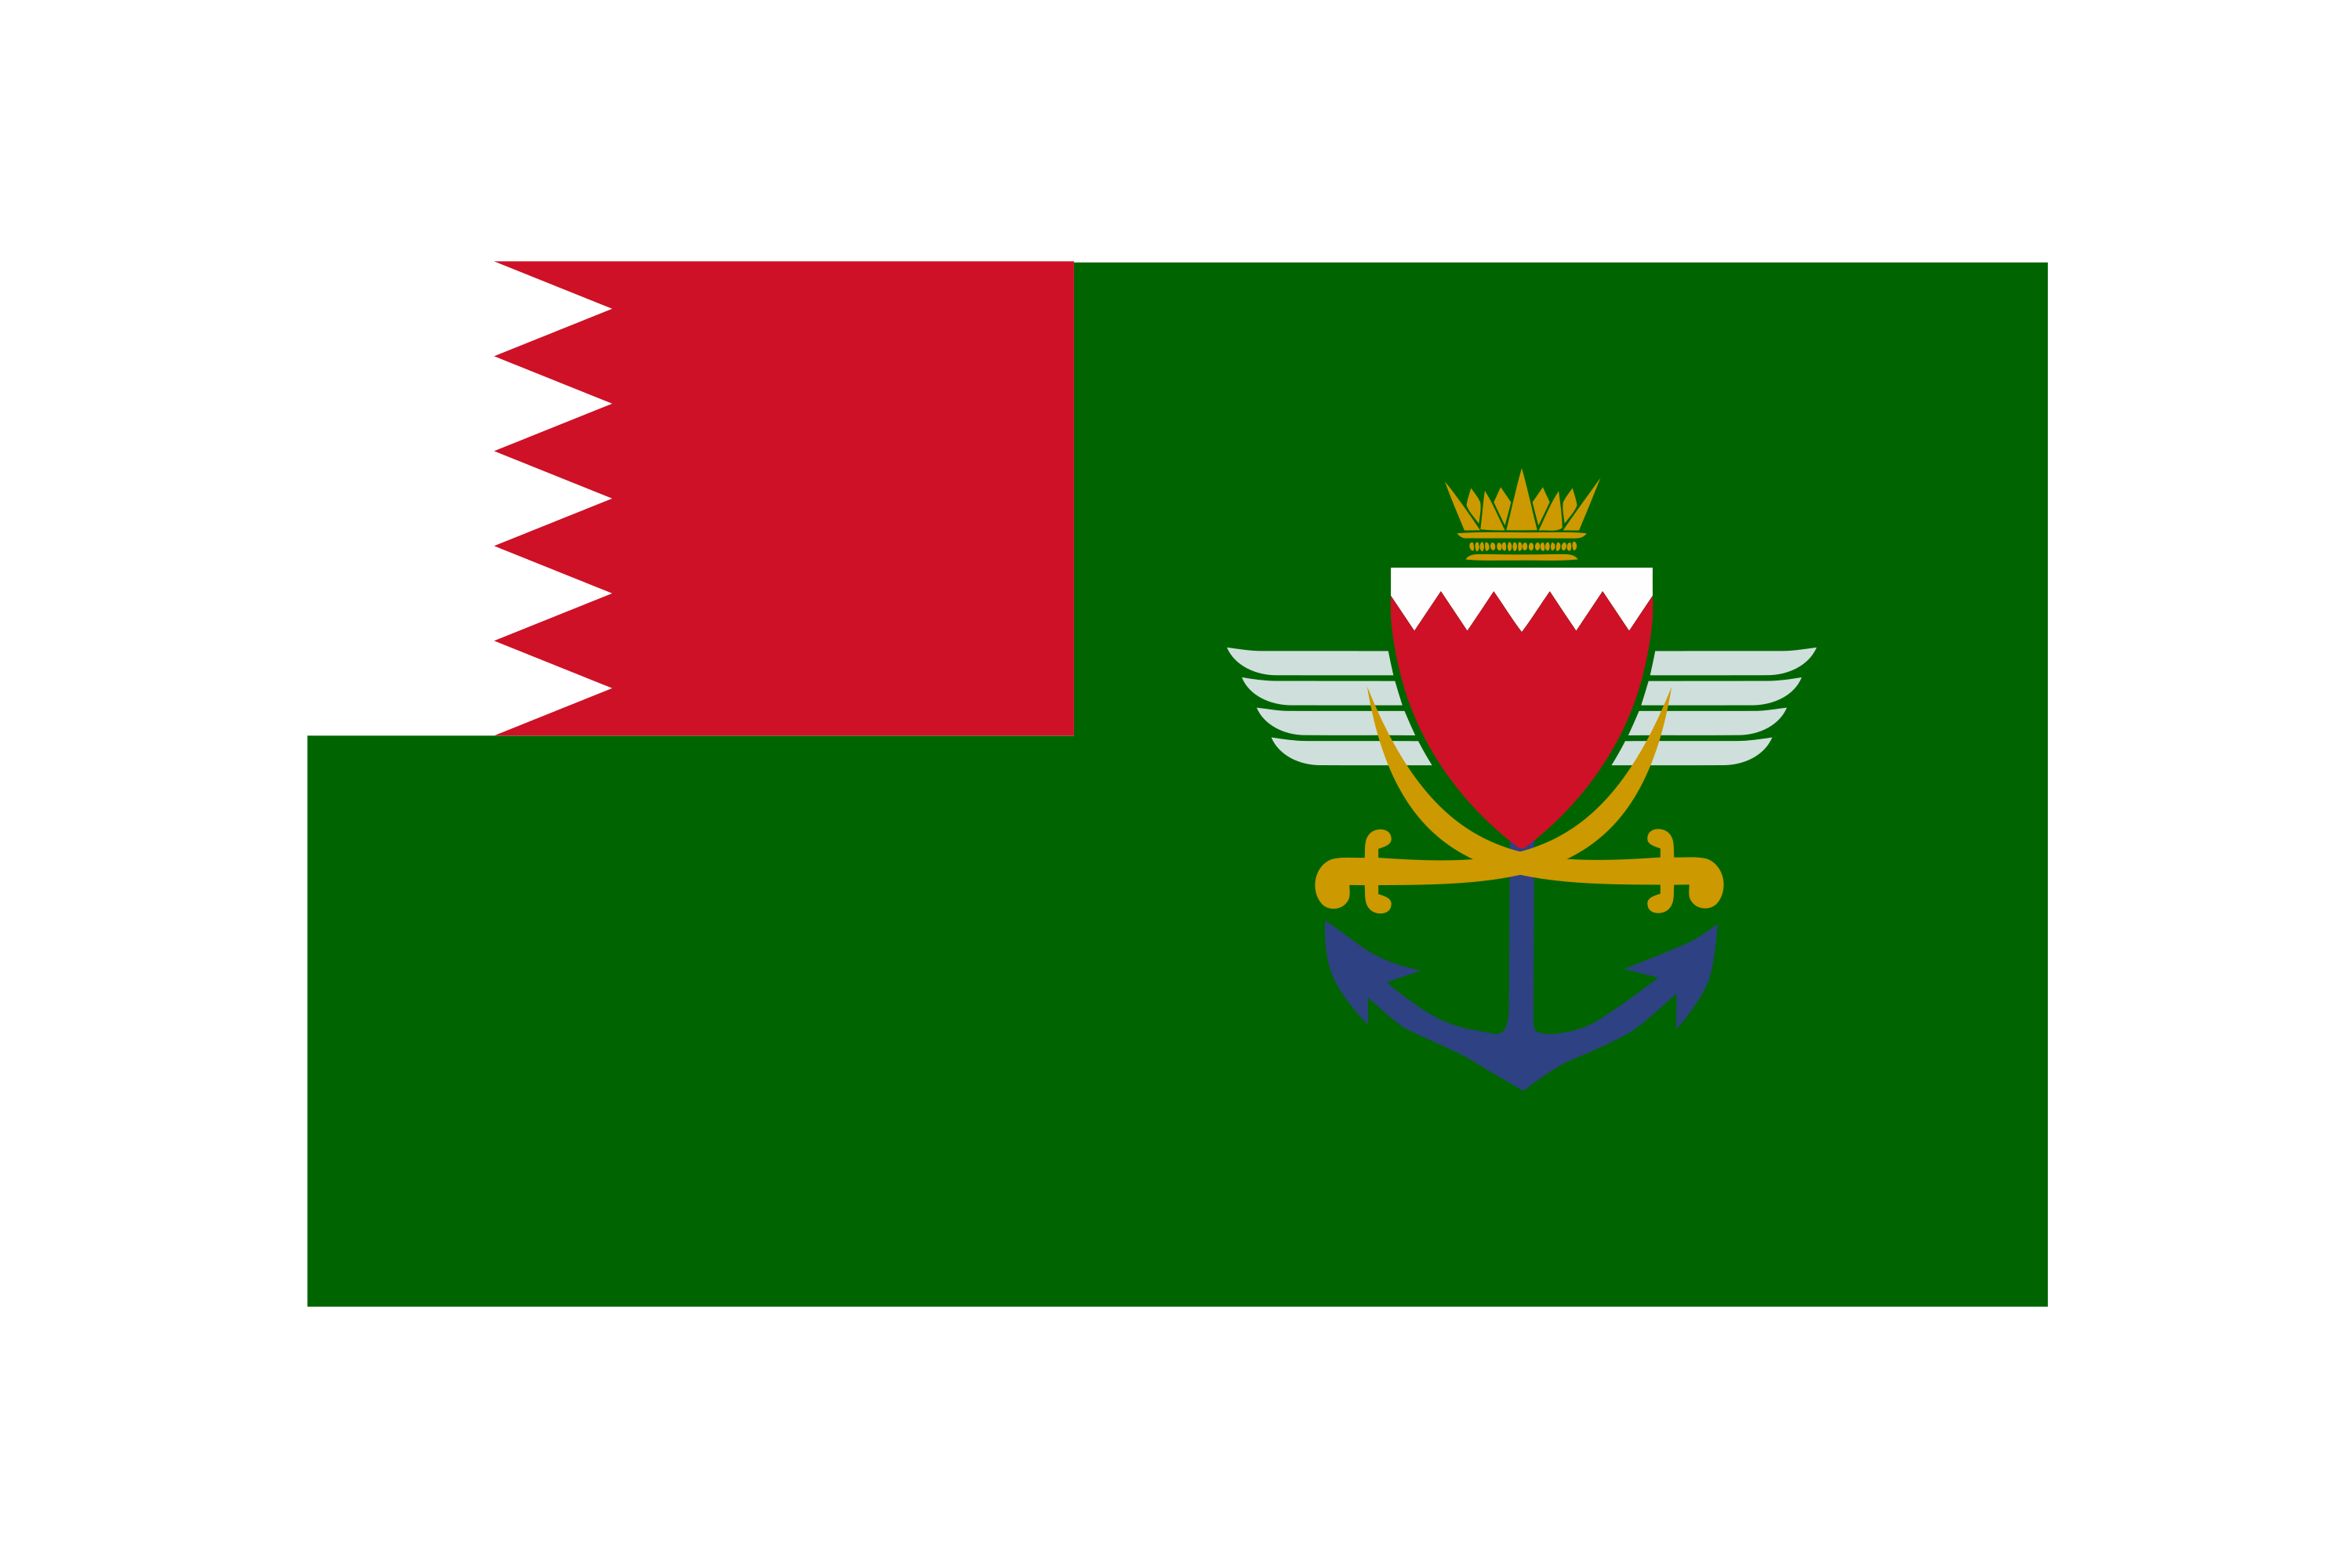 Download Bahrain Defence Force Logo in SVG Vector or PNG File Format